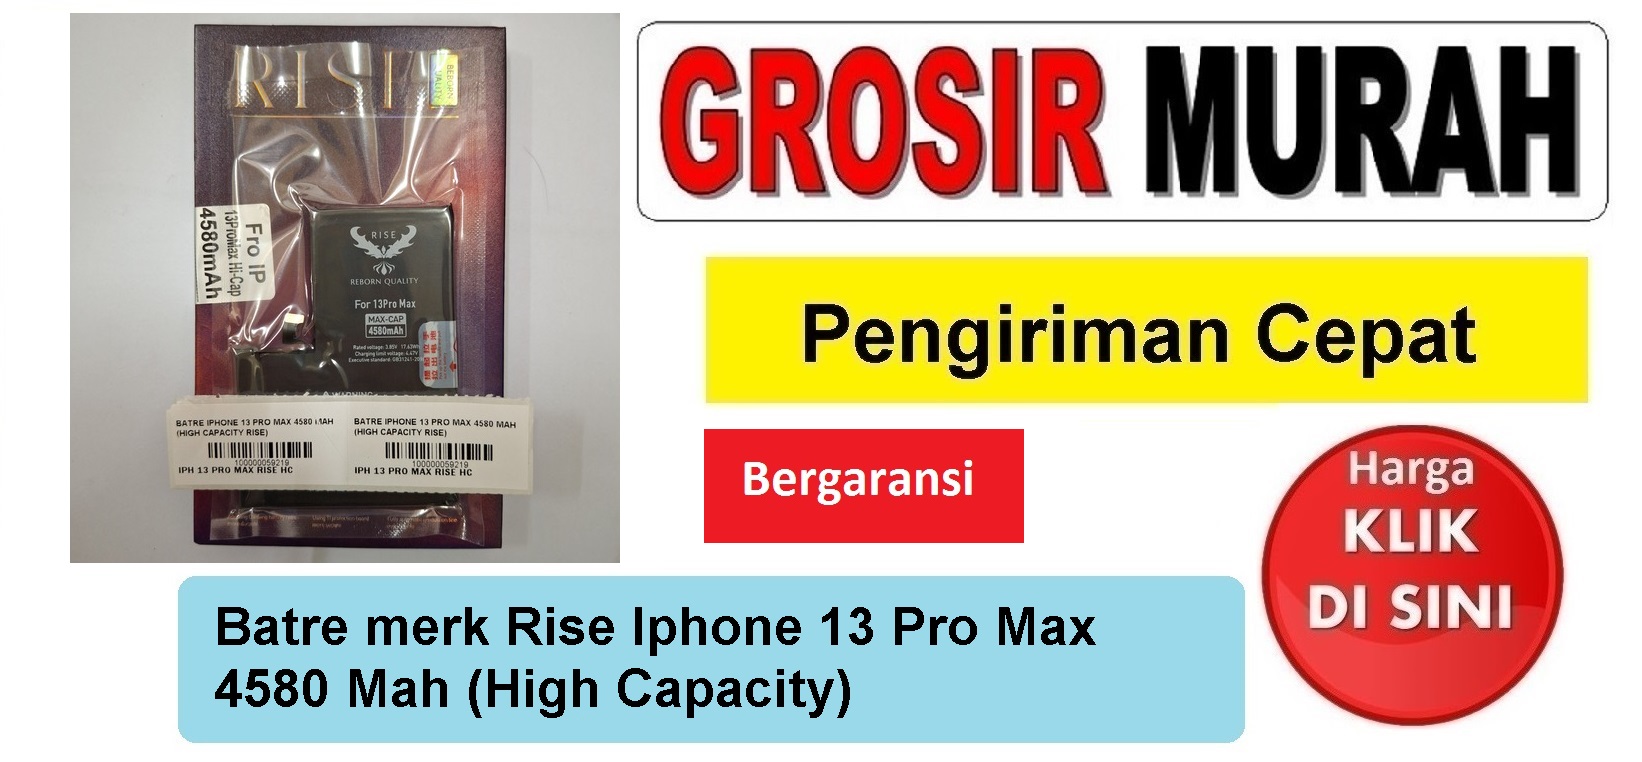 Batre merk Rise Iphone 13 Pro Max 4580 Mah (High Capacity) Baterai Battery Bergaransi Batere